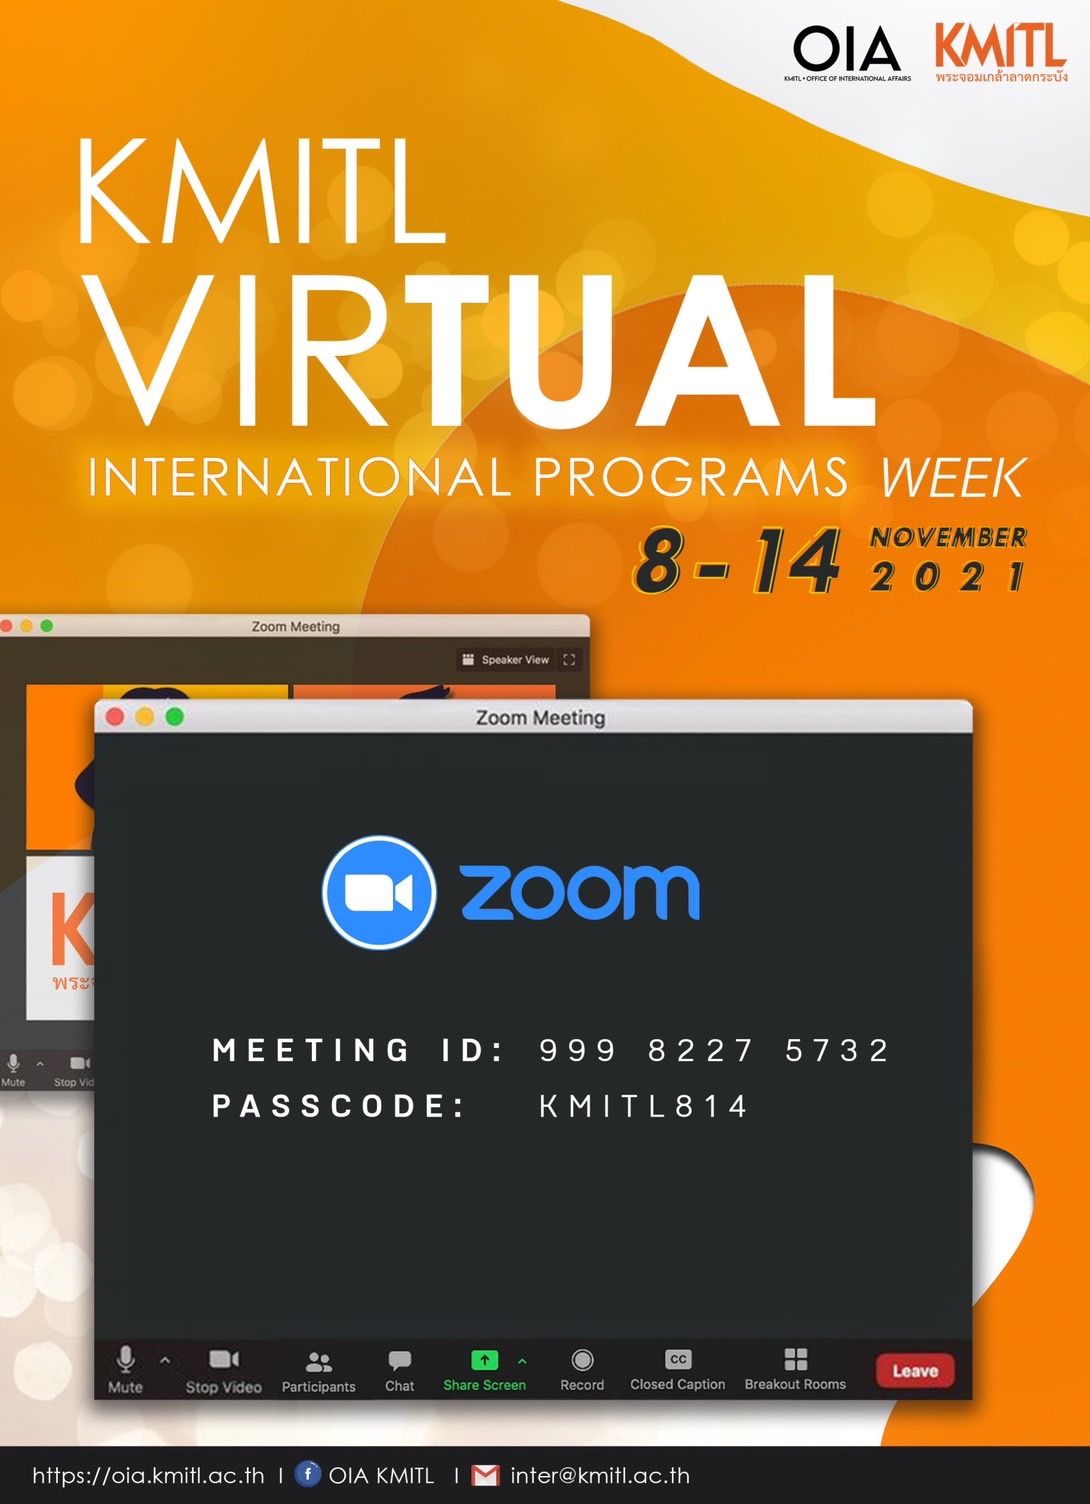 KMITL Virtual International Programs Week 2021